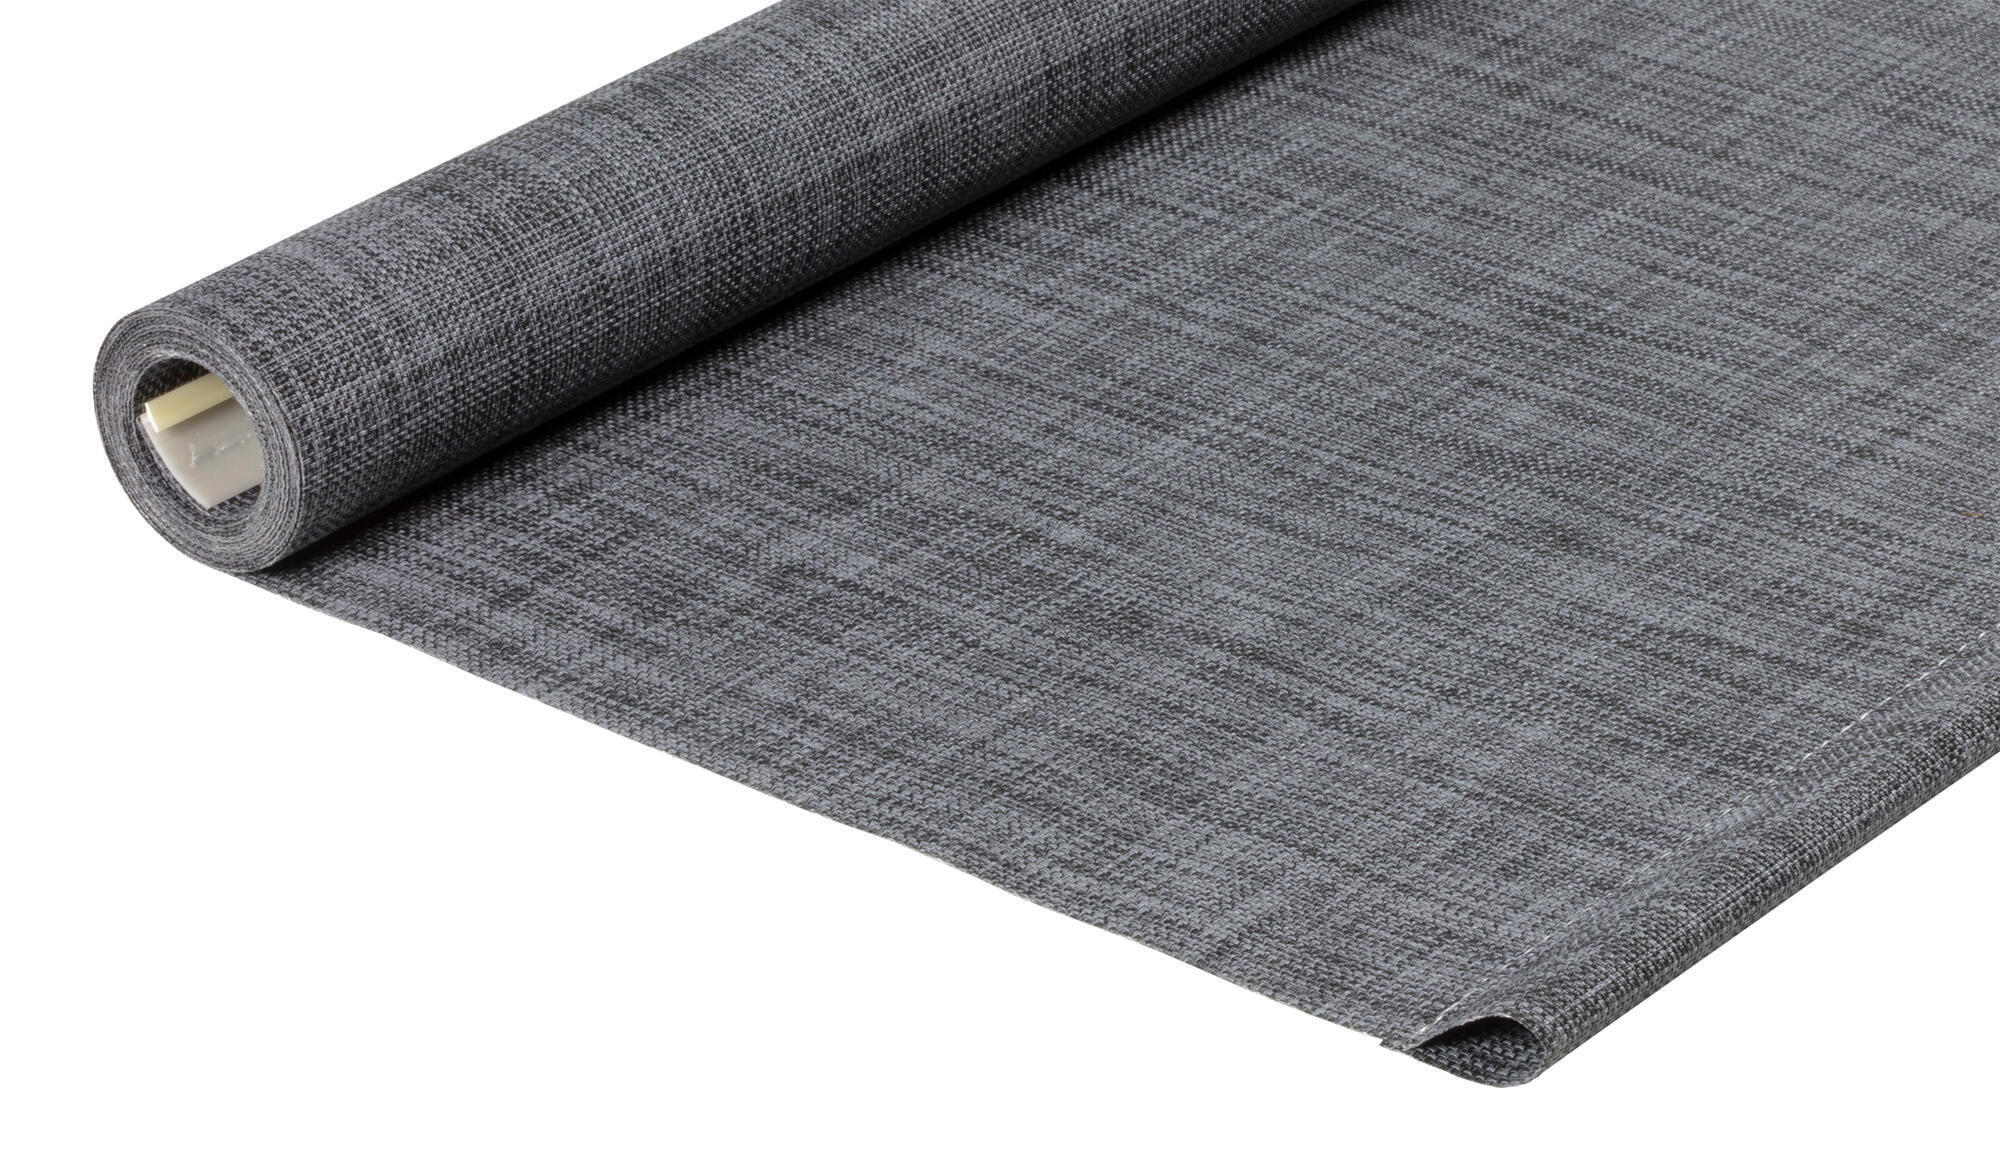 Tessuto per tende a rullo filtrante INSPIRE Puebla grigio / argento 70.8 x 250 cm - 2